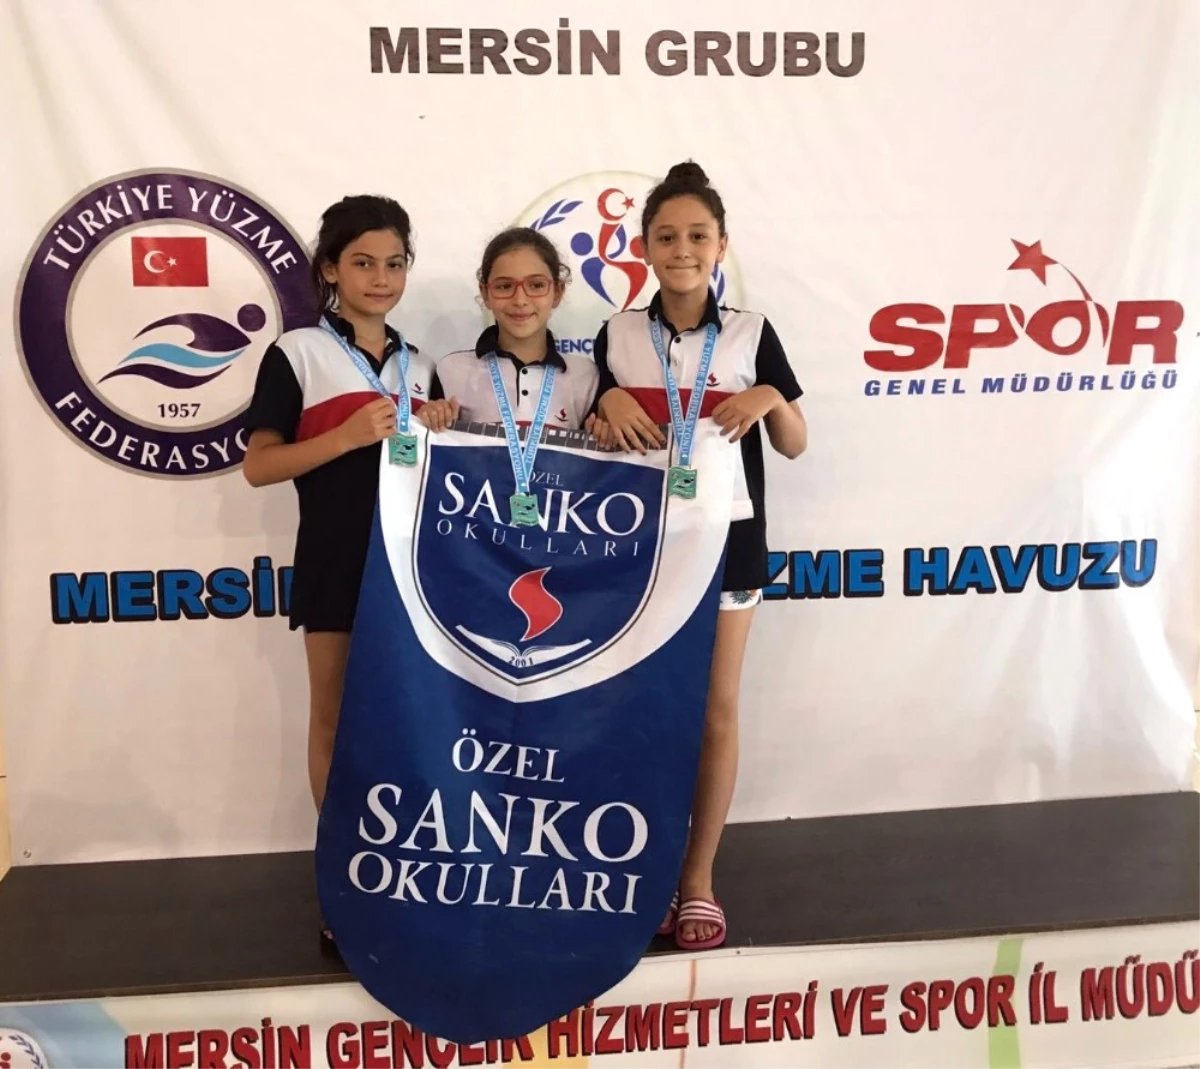 Özel Sanko Okullarının Yüzme Başarısı